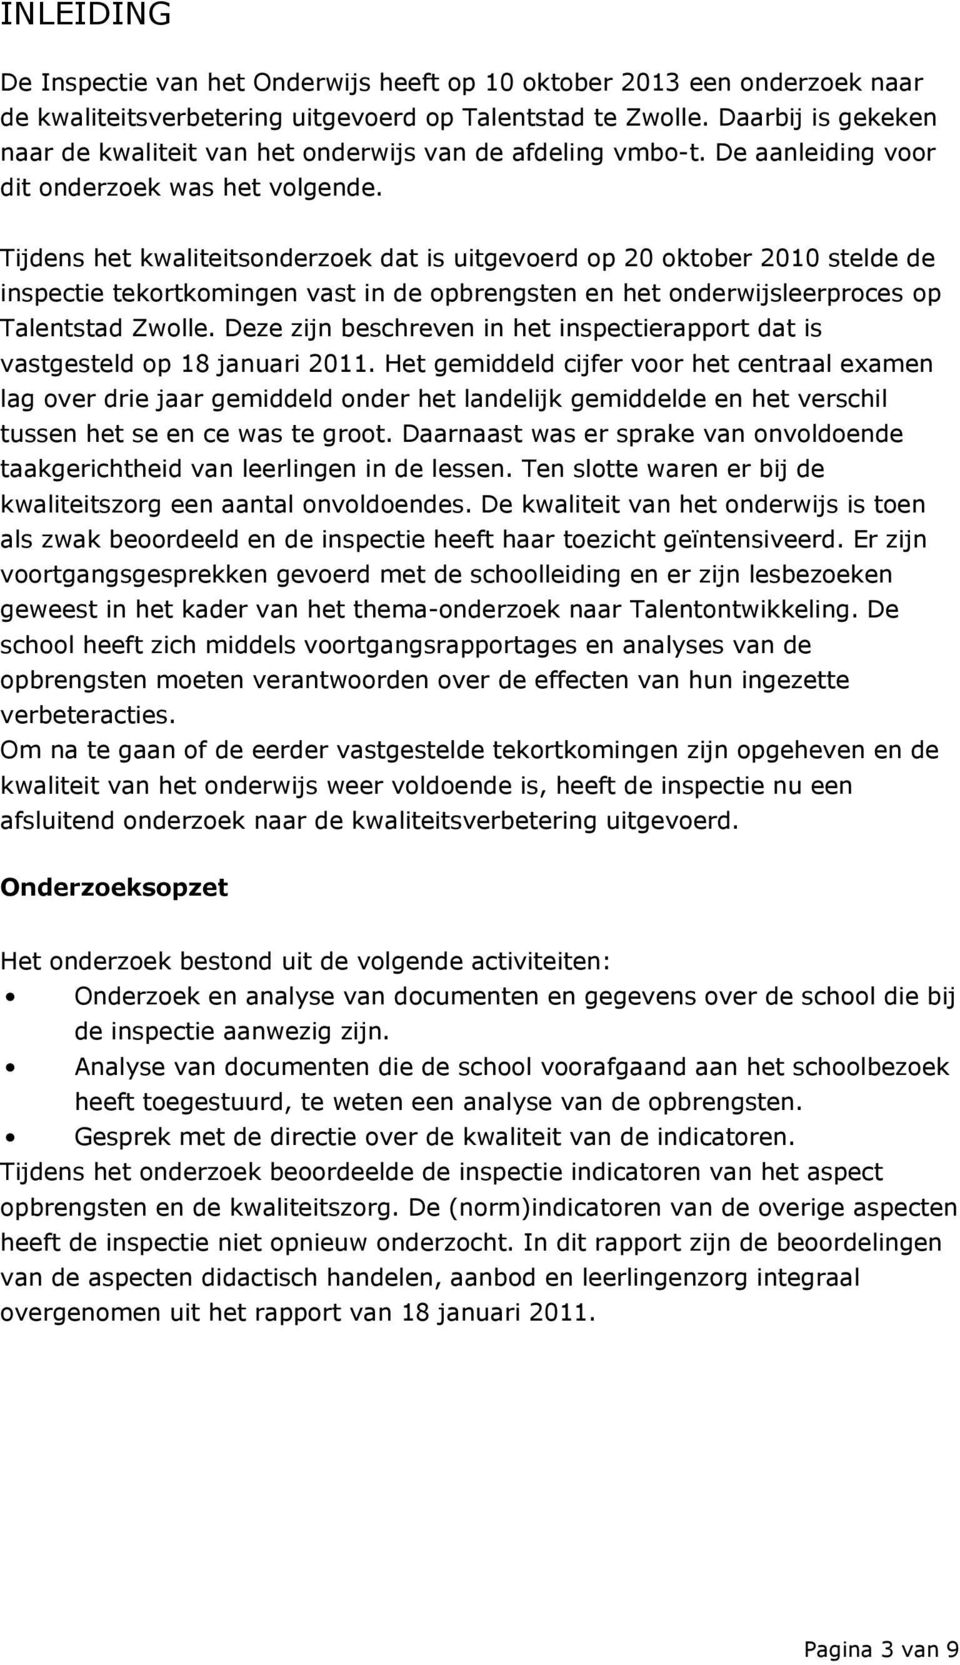 Tijdens het kwaliteitsonderzoek dat is uitgevoerd op 20 oktober 2010 stelde de inspectie tekortkomingen vast in de opbrengsten en het onderwijsleerproces op Talentstad Zwolle.